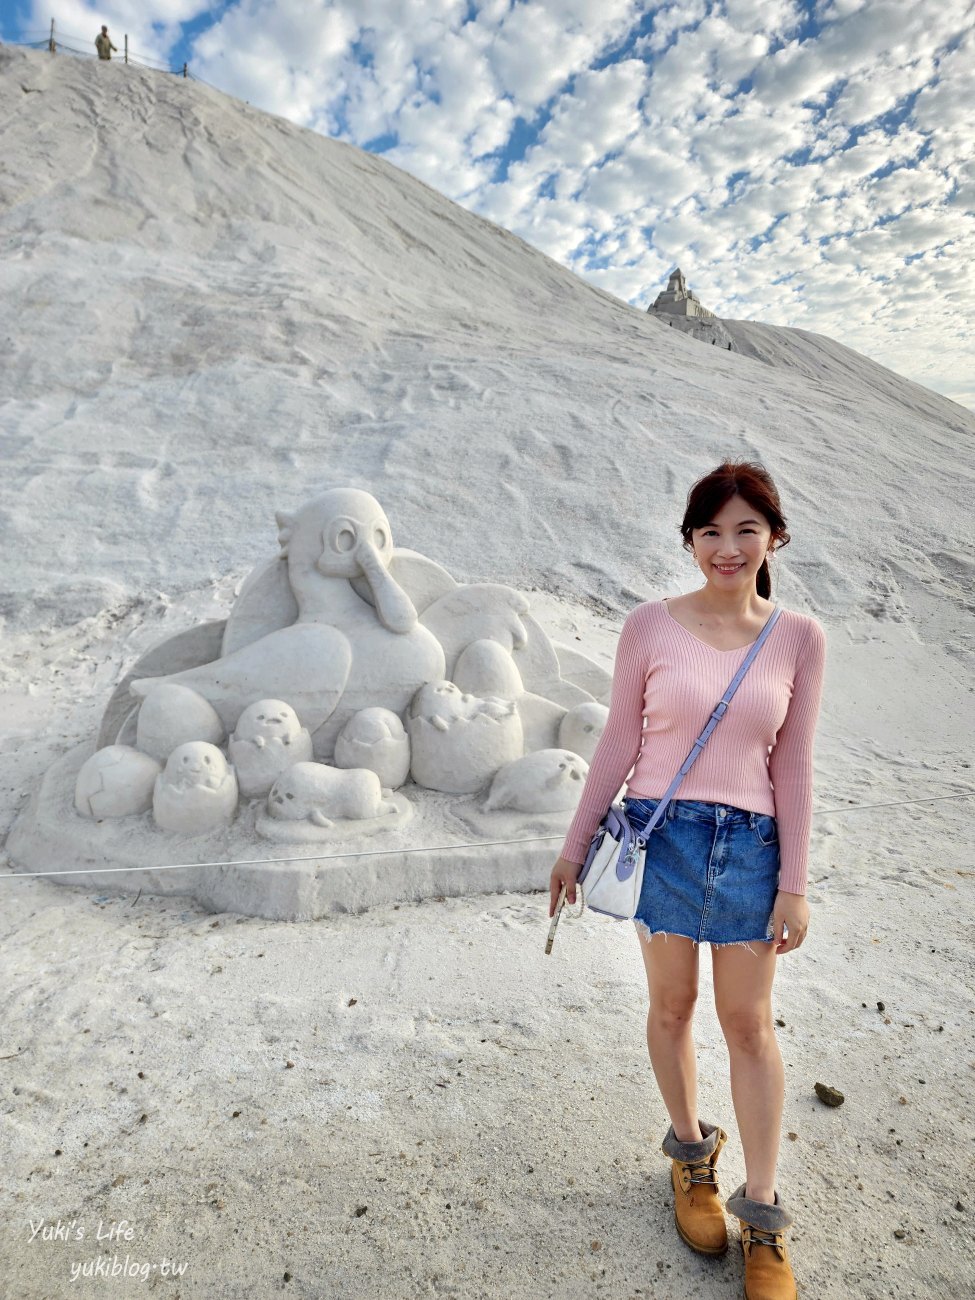 台南景點【七股鹽山】最新三麗鷗鹽雕特展，雪白萌樣的Kitty和蛋黃哥讓人好融化 - yukiblog.tw